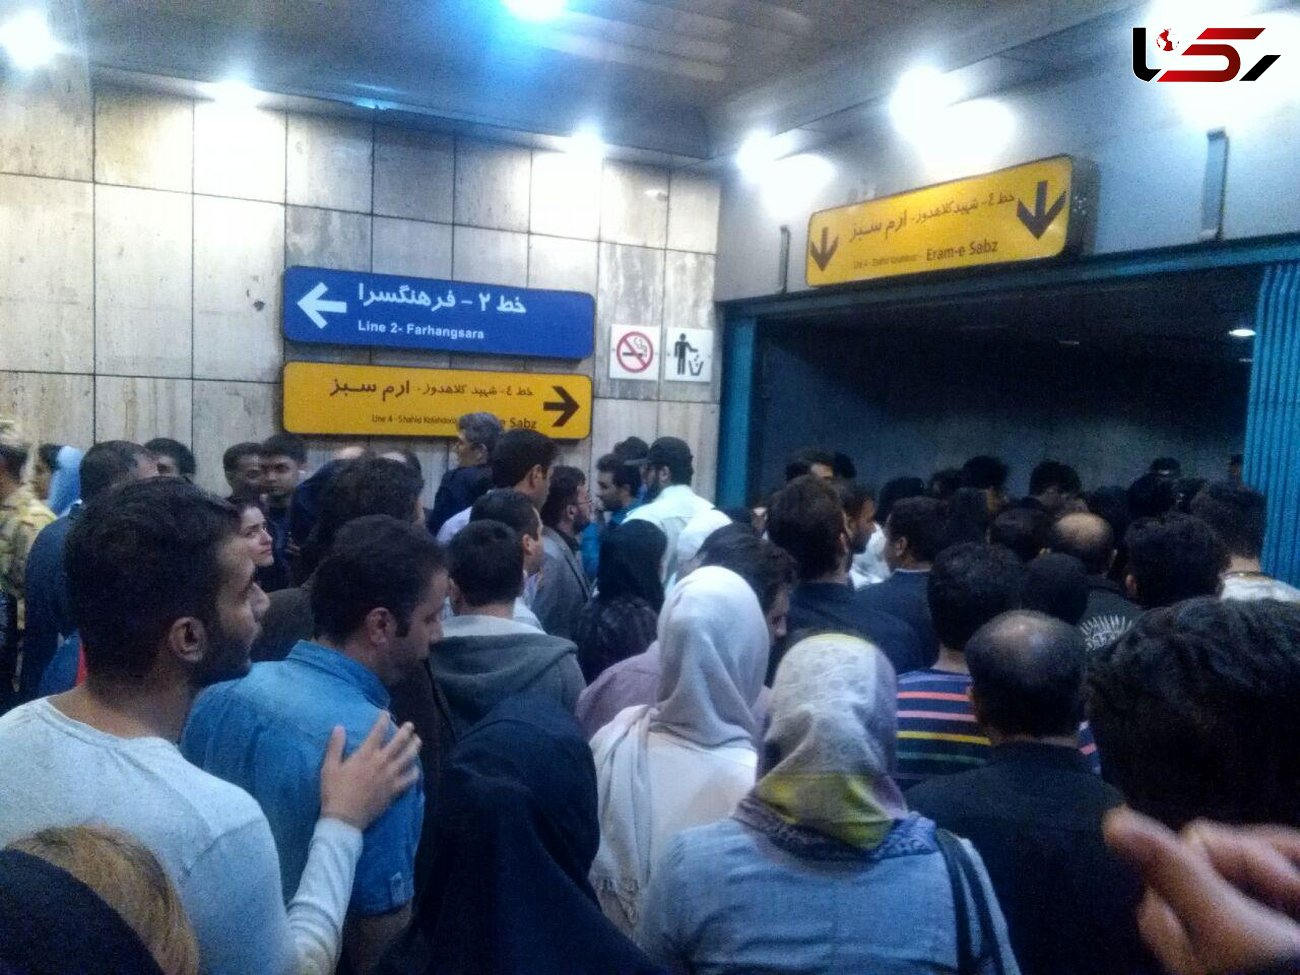 اتفاقی نادر در مترو تهران + عکس